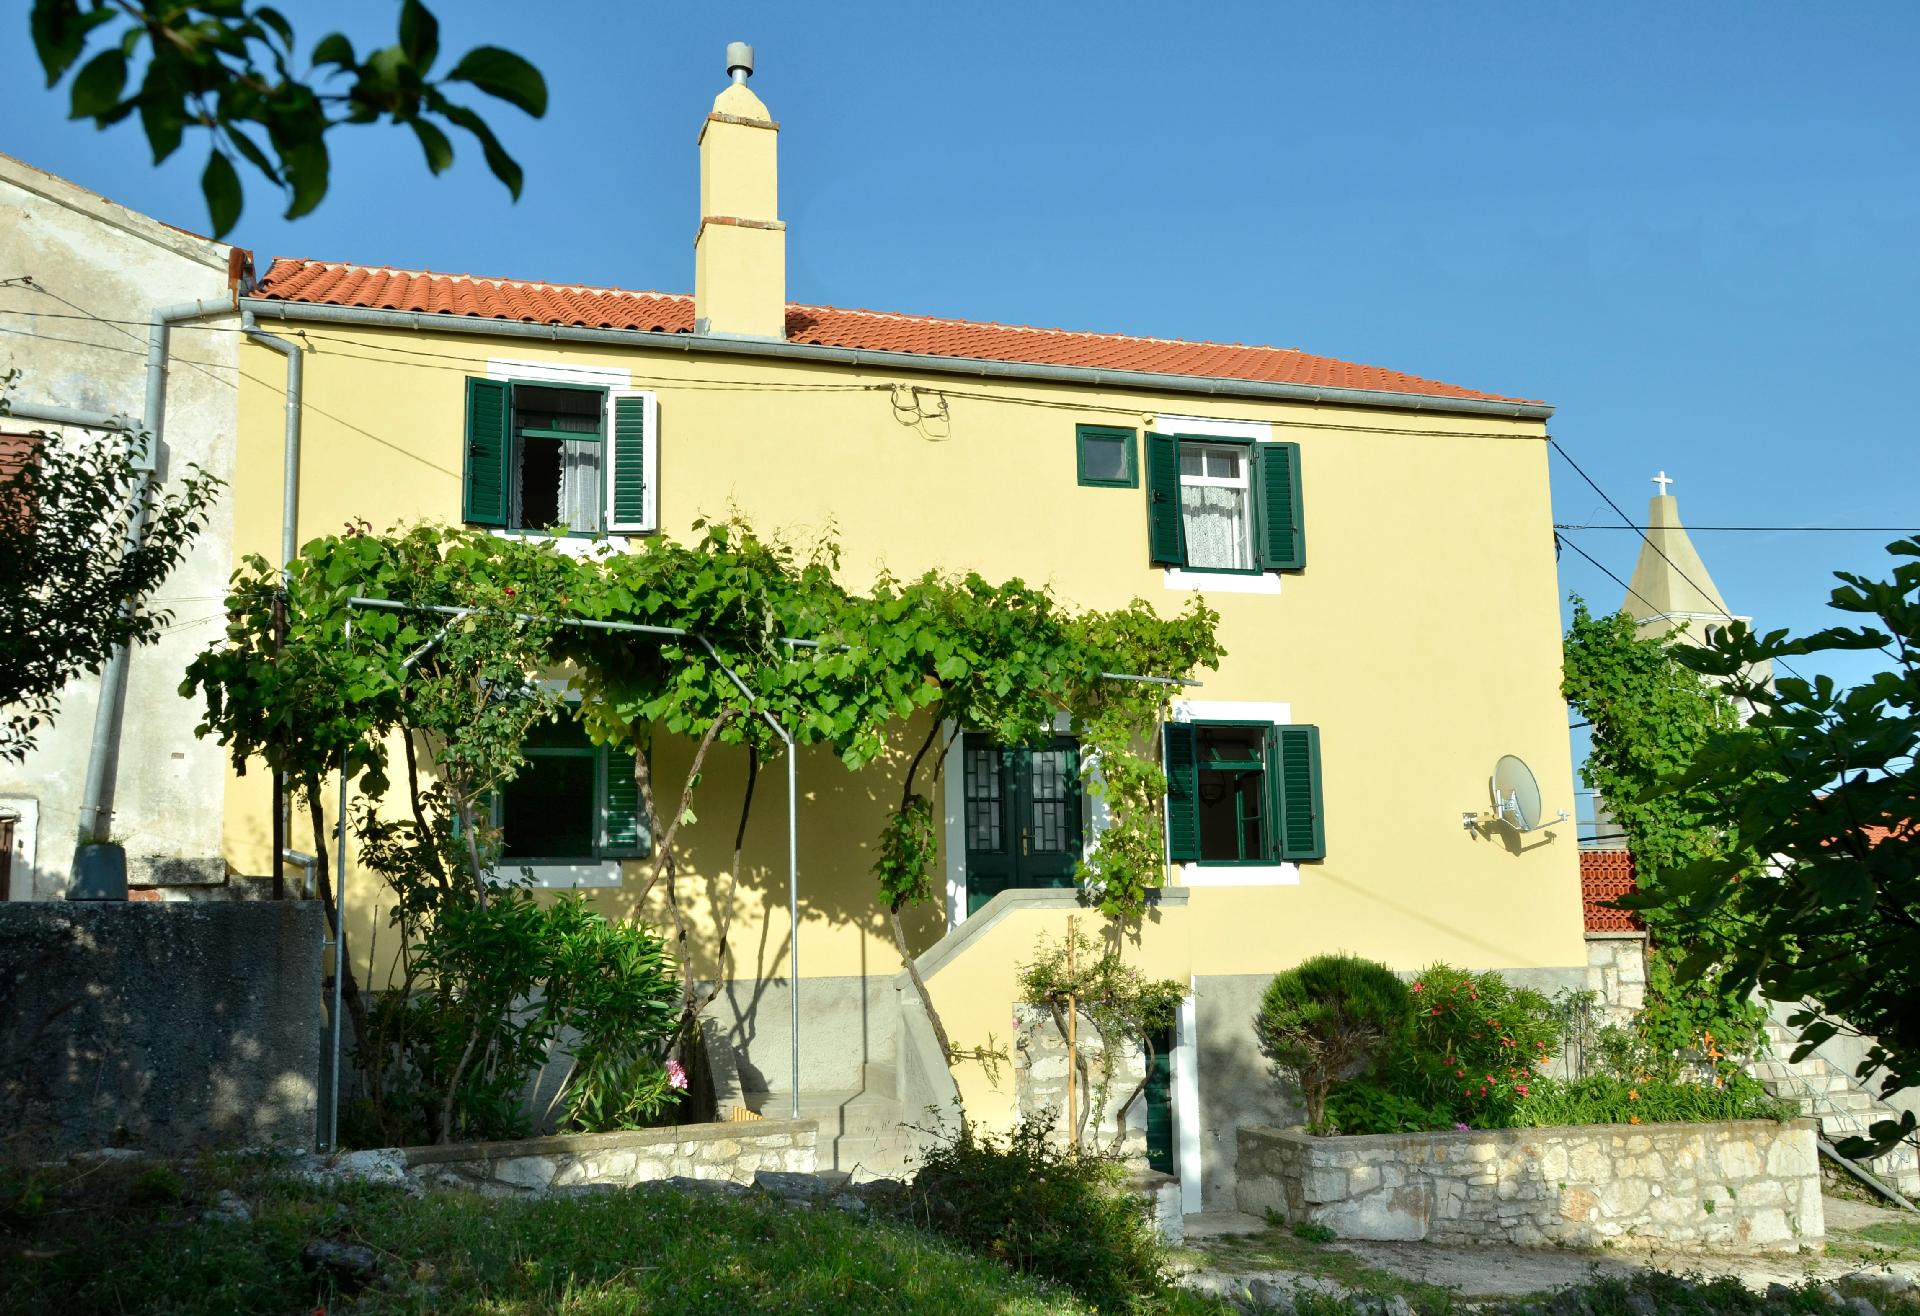 Insel Cres, Stivan, liebevoll restauriertes Dorfha Ferienhaus  kroatische Inseln